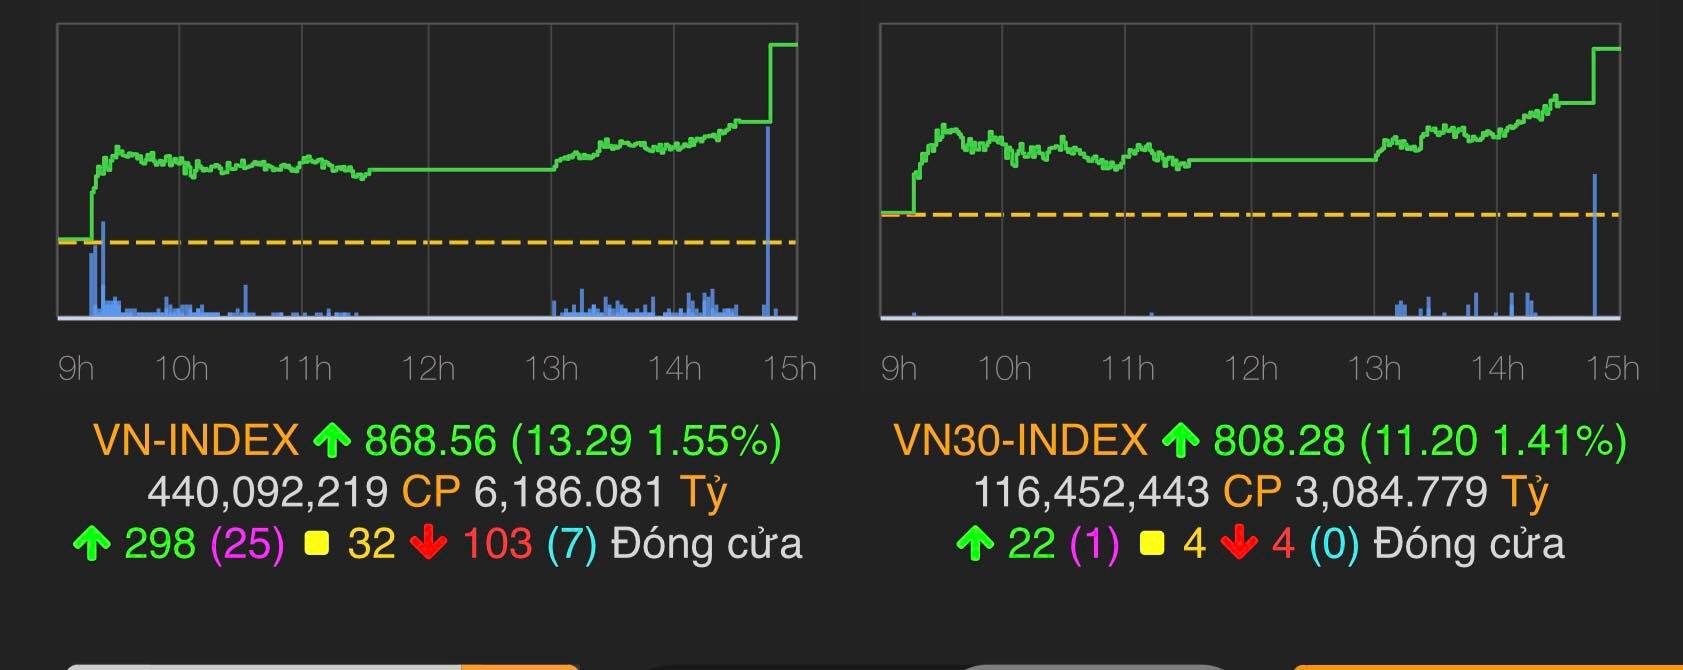 VN-Index đóng cửa tăng 13,29 điểm (1,55%) lên 868,56 điểm.